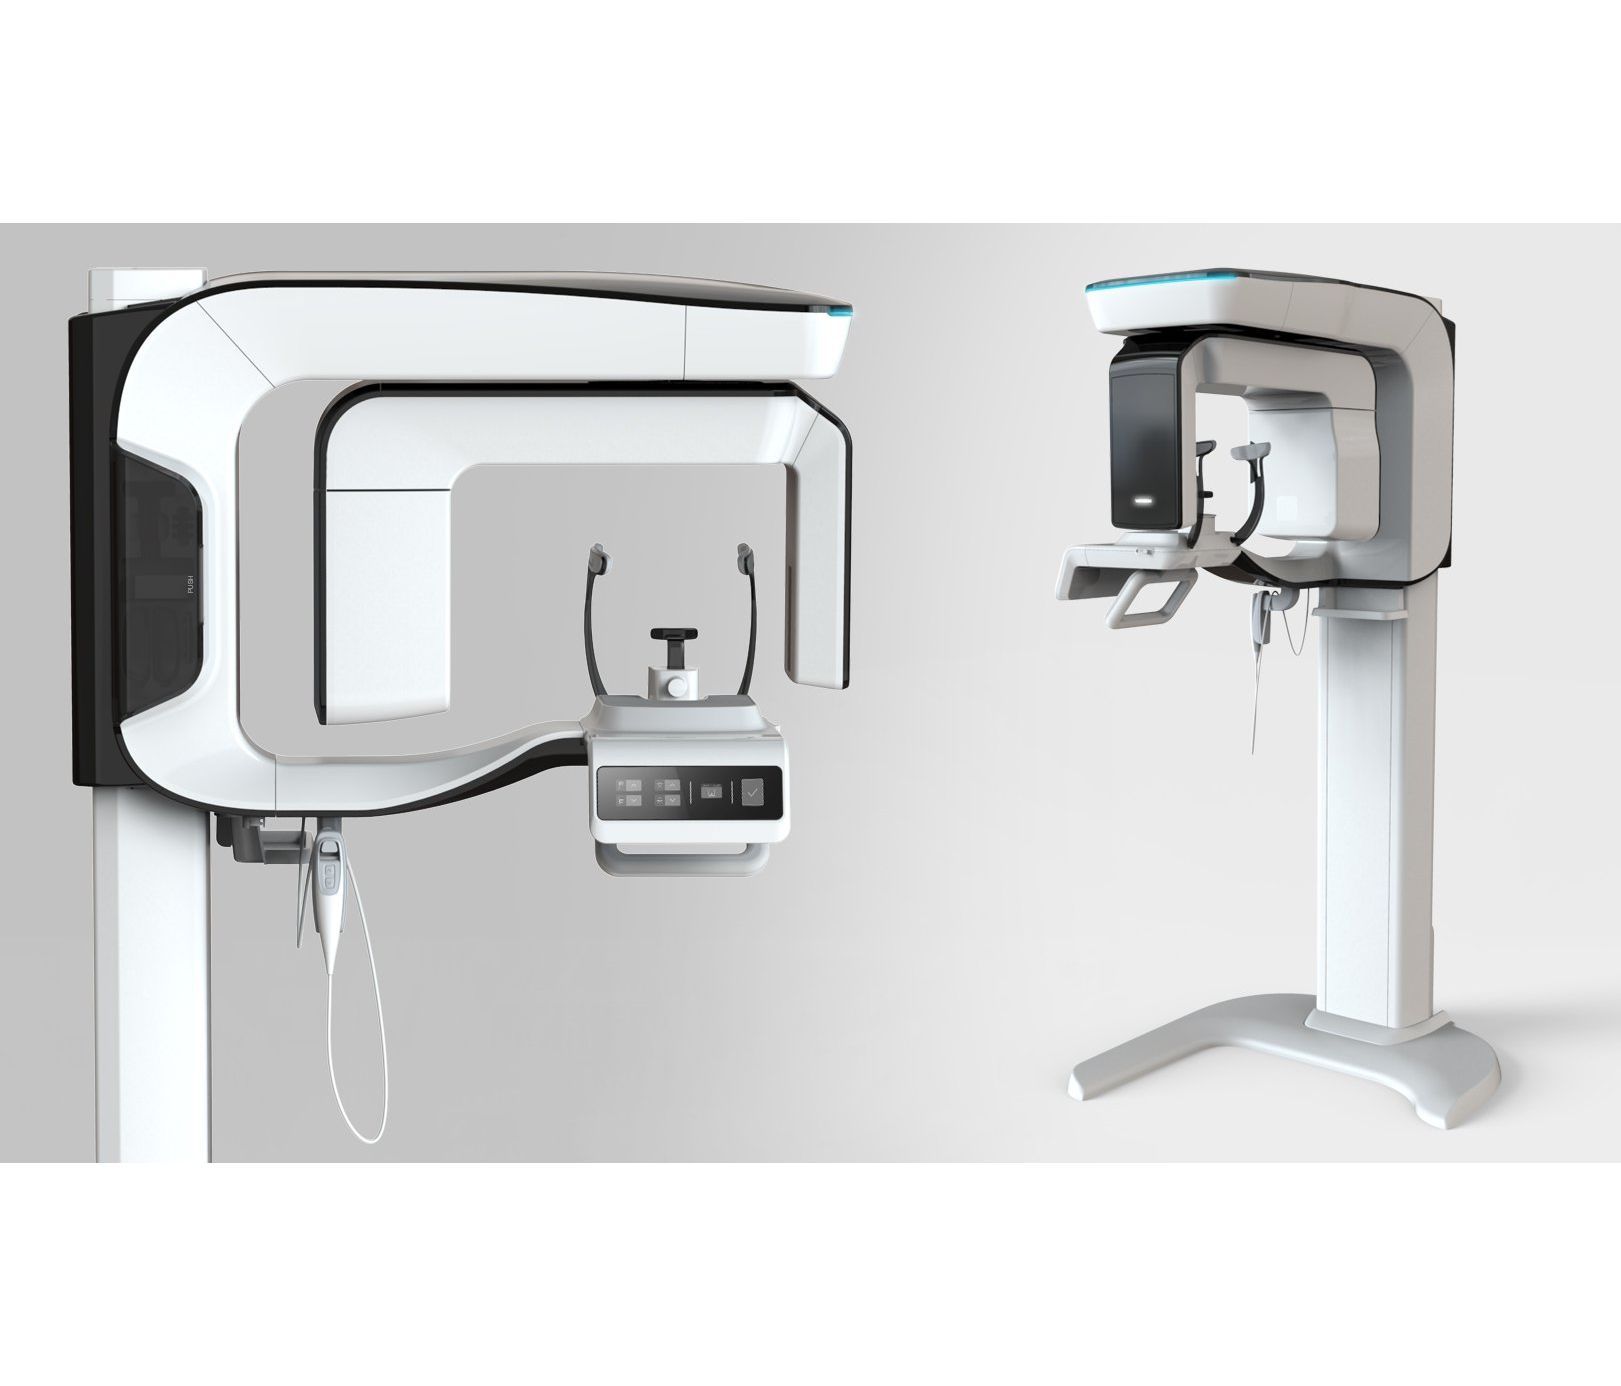 3D томограф Pax-i 3D SC панорамный, конусно-лучевой, FOV 12x9